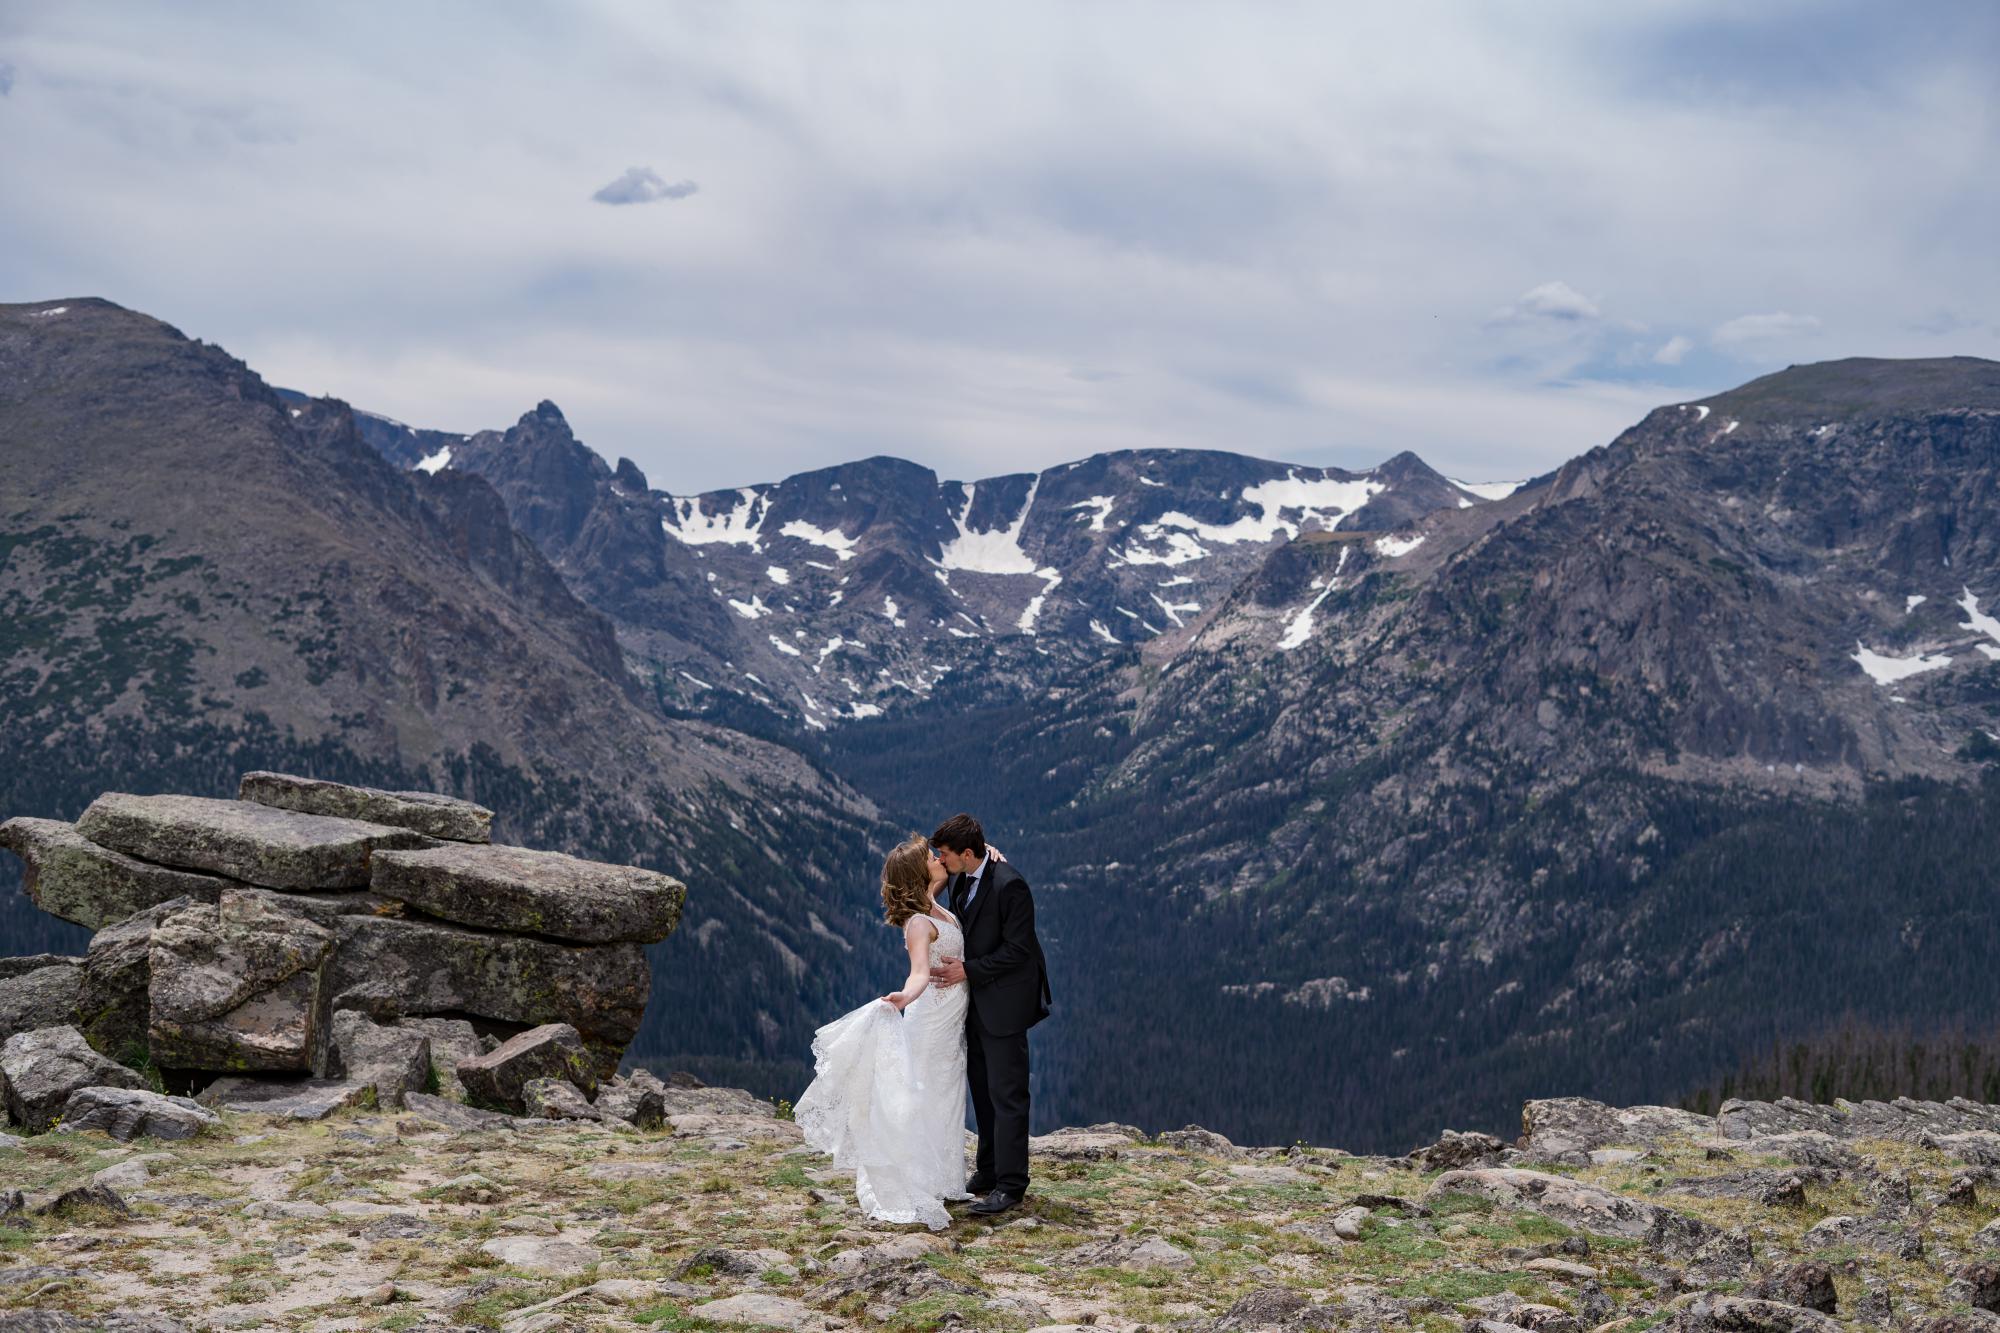 Colorado couple elopes in Rocky mountains